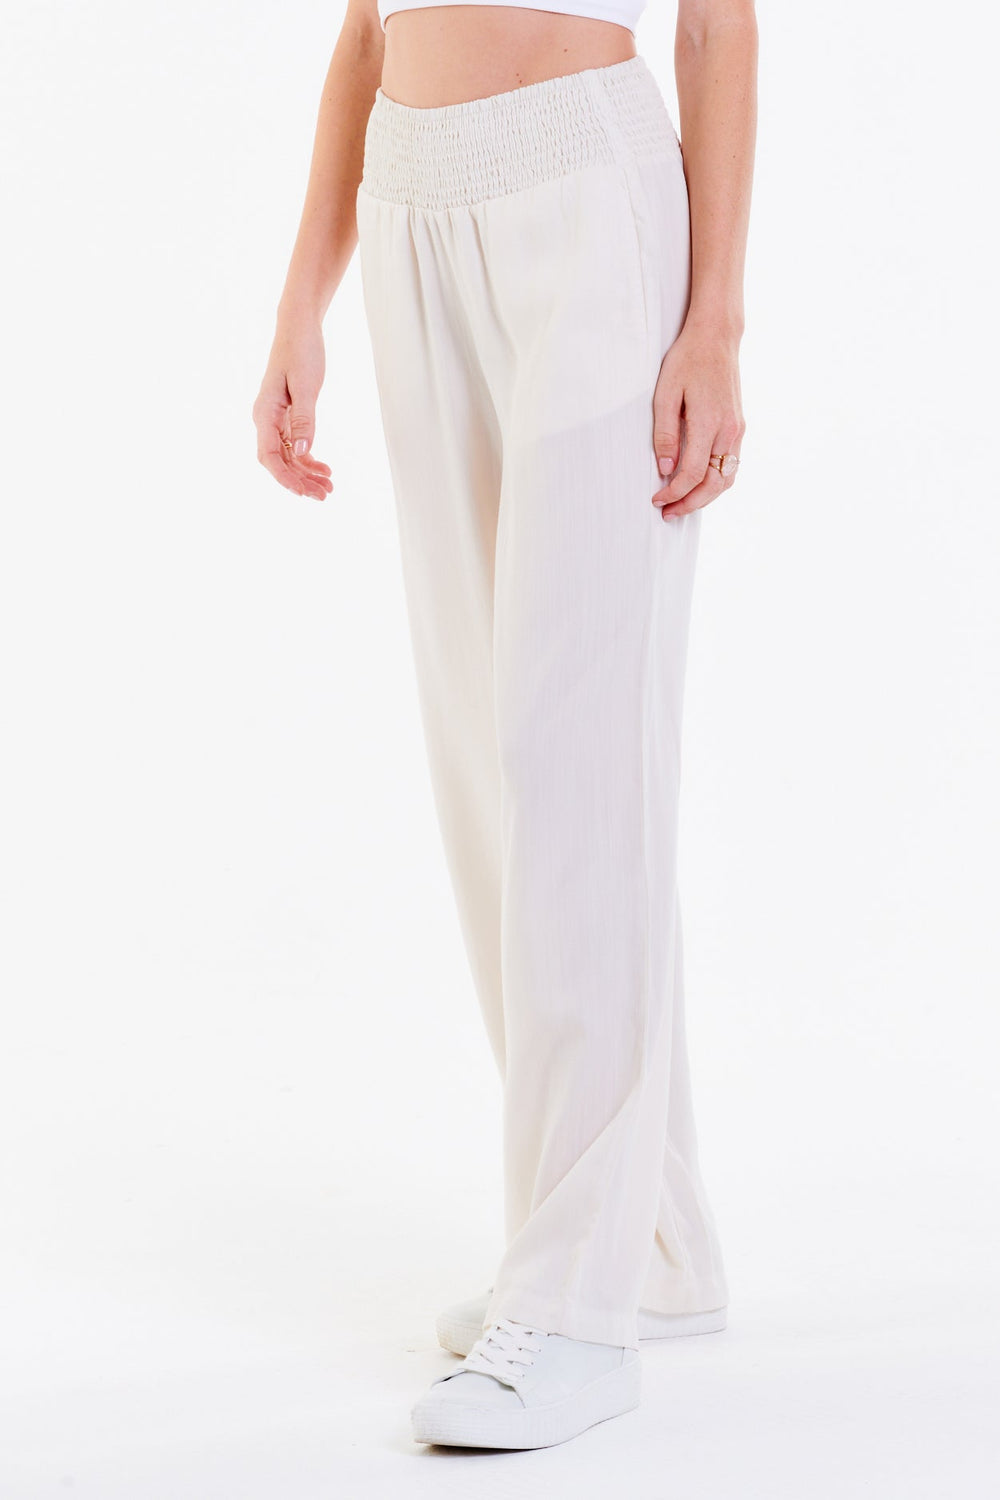 image of a female model wearing a LIZZIE LOUNGE PANTS OFF WHITE DEAR JOHN DENIM 